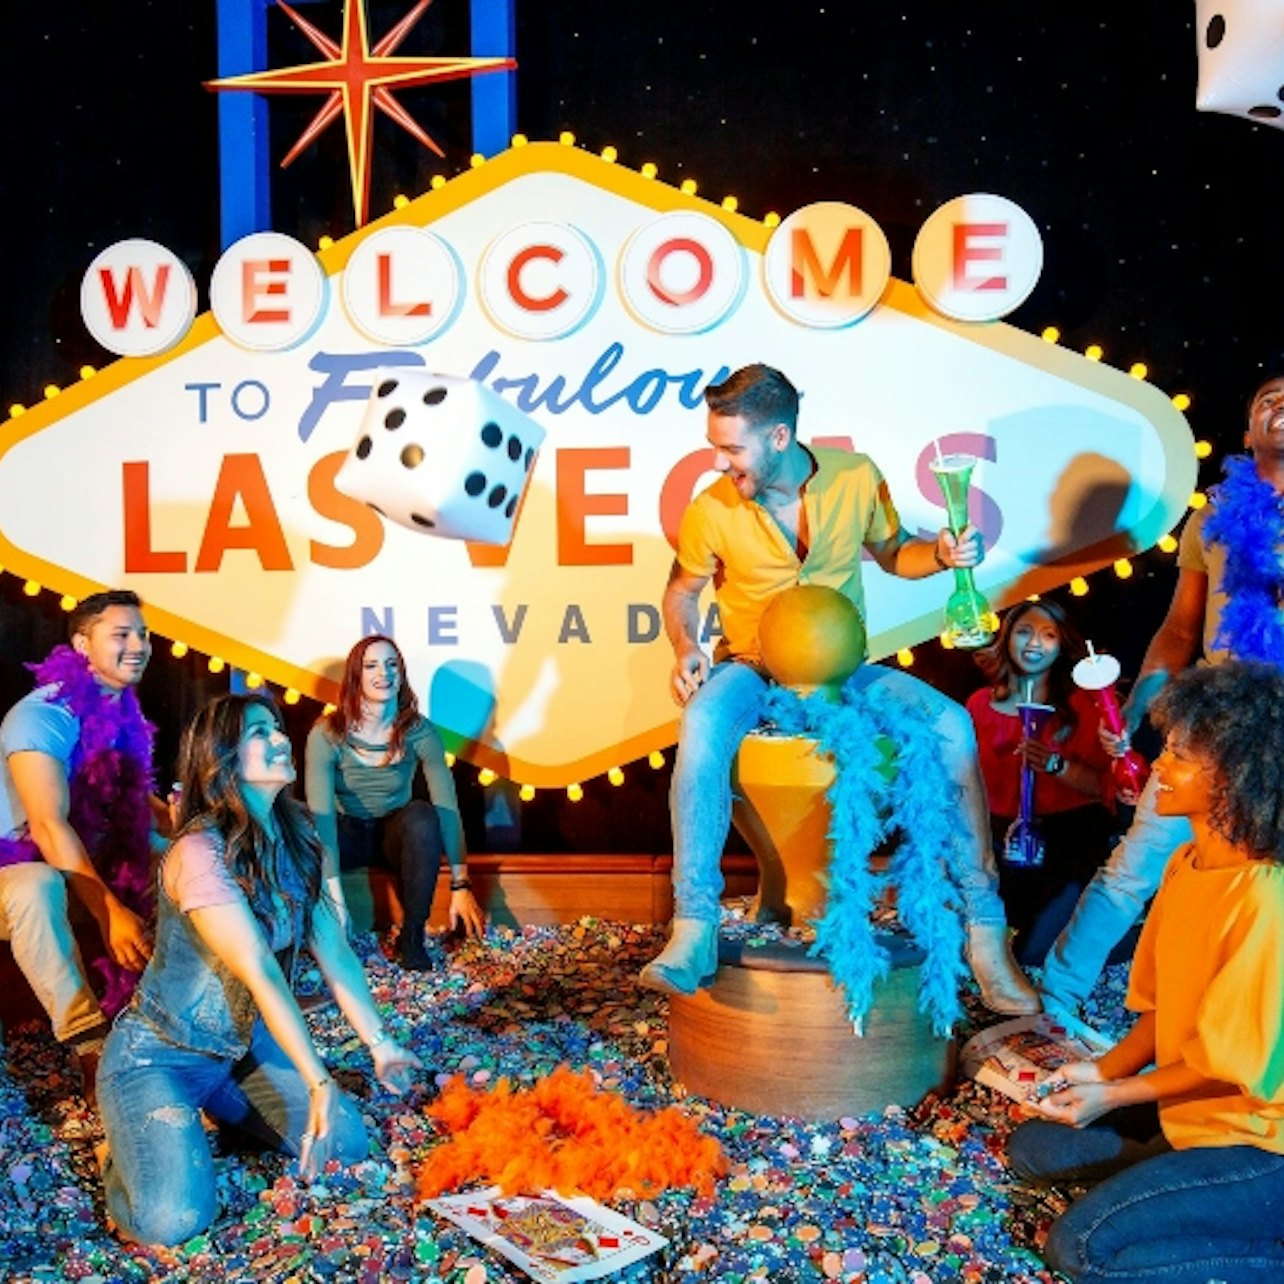 Madame Tussauds Las Vegas - Accommodations in Las Vegas